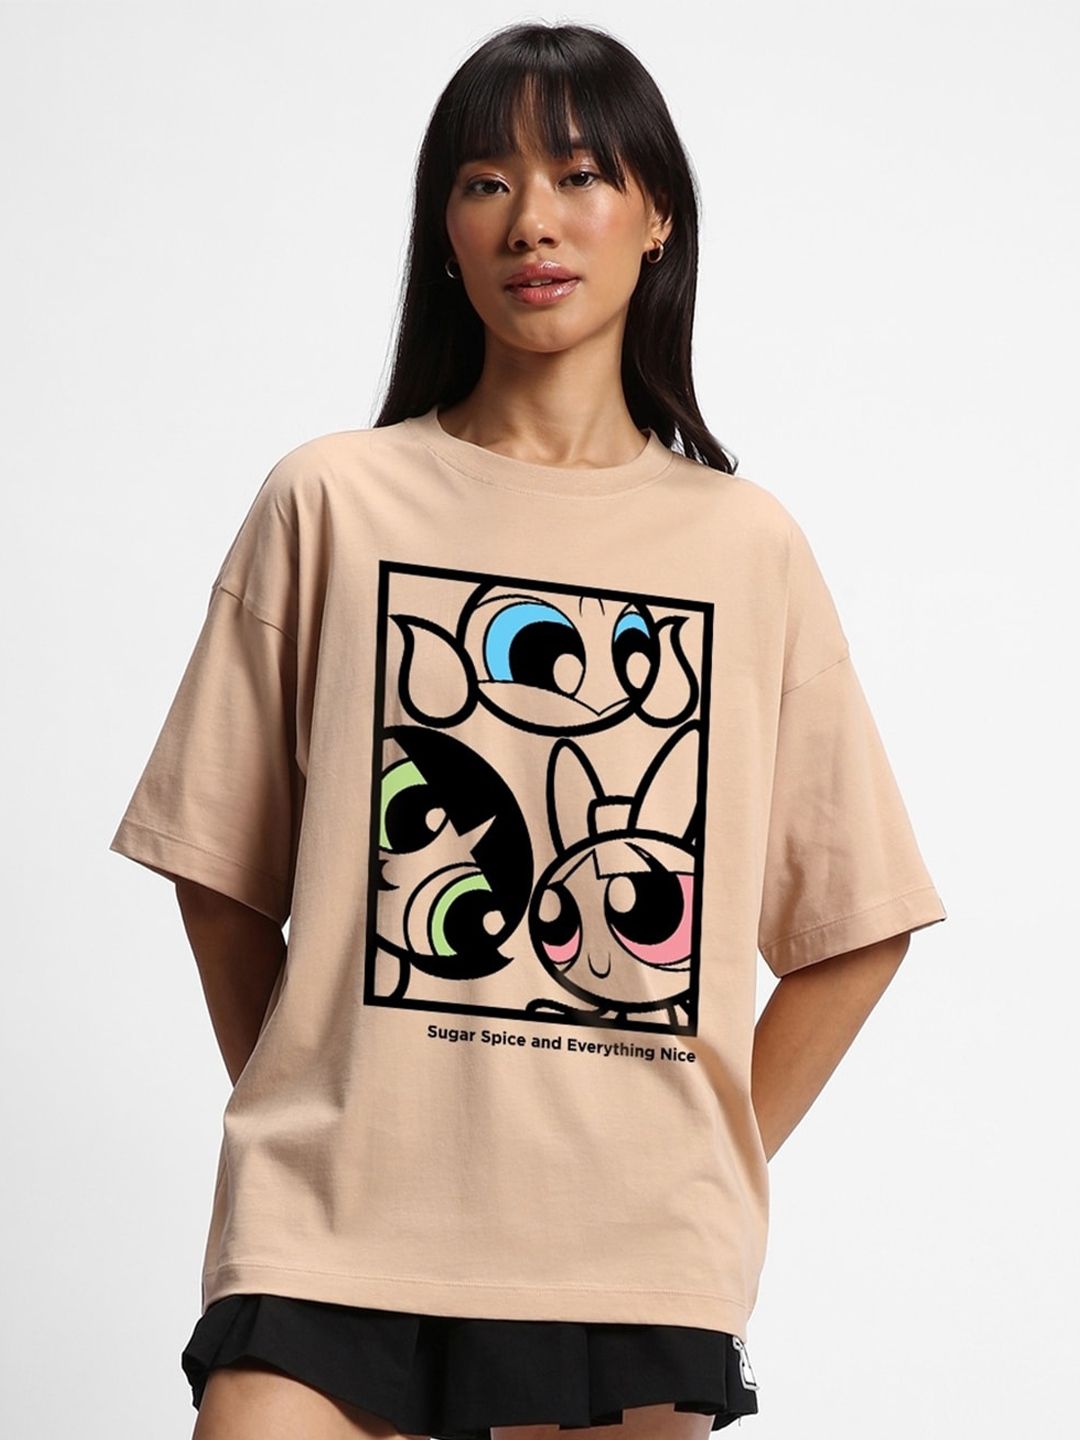 Bewakoof Brown Powerpuff Girls Printed Round Neck Short Sleeves Cotton Oversized T-shirt Price in India